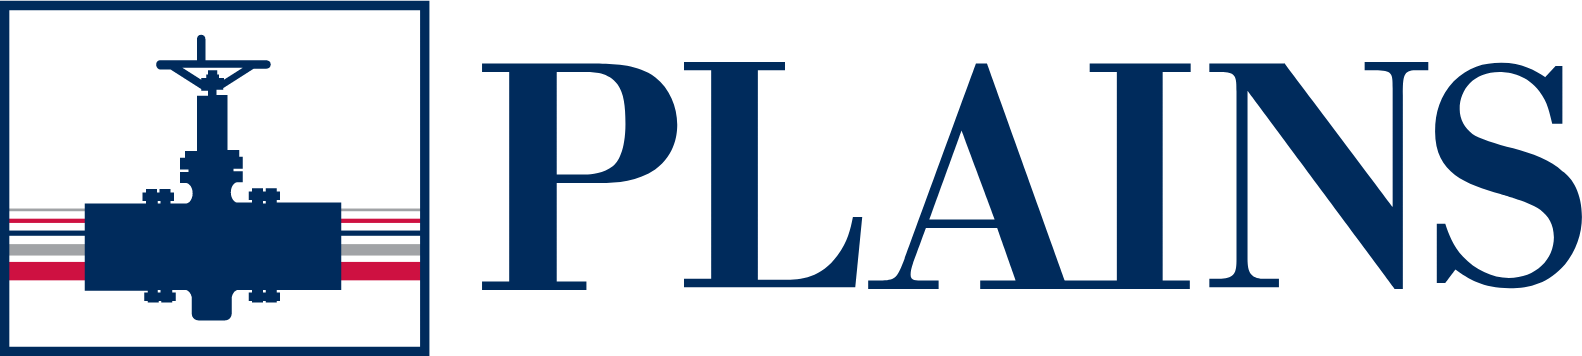 Plains GP logo large (transparent PNG)